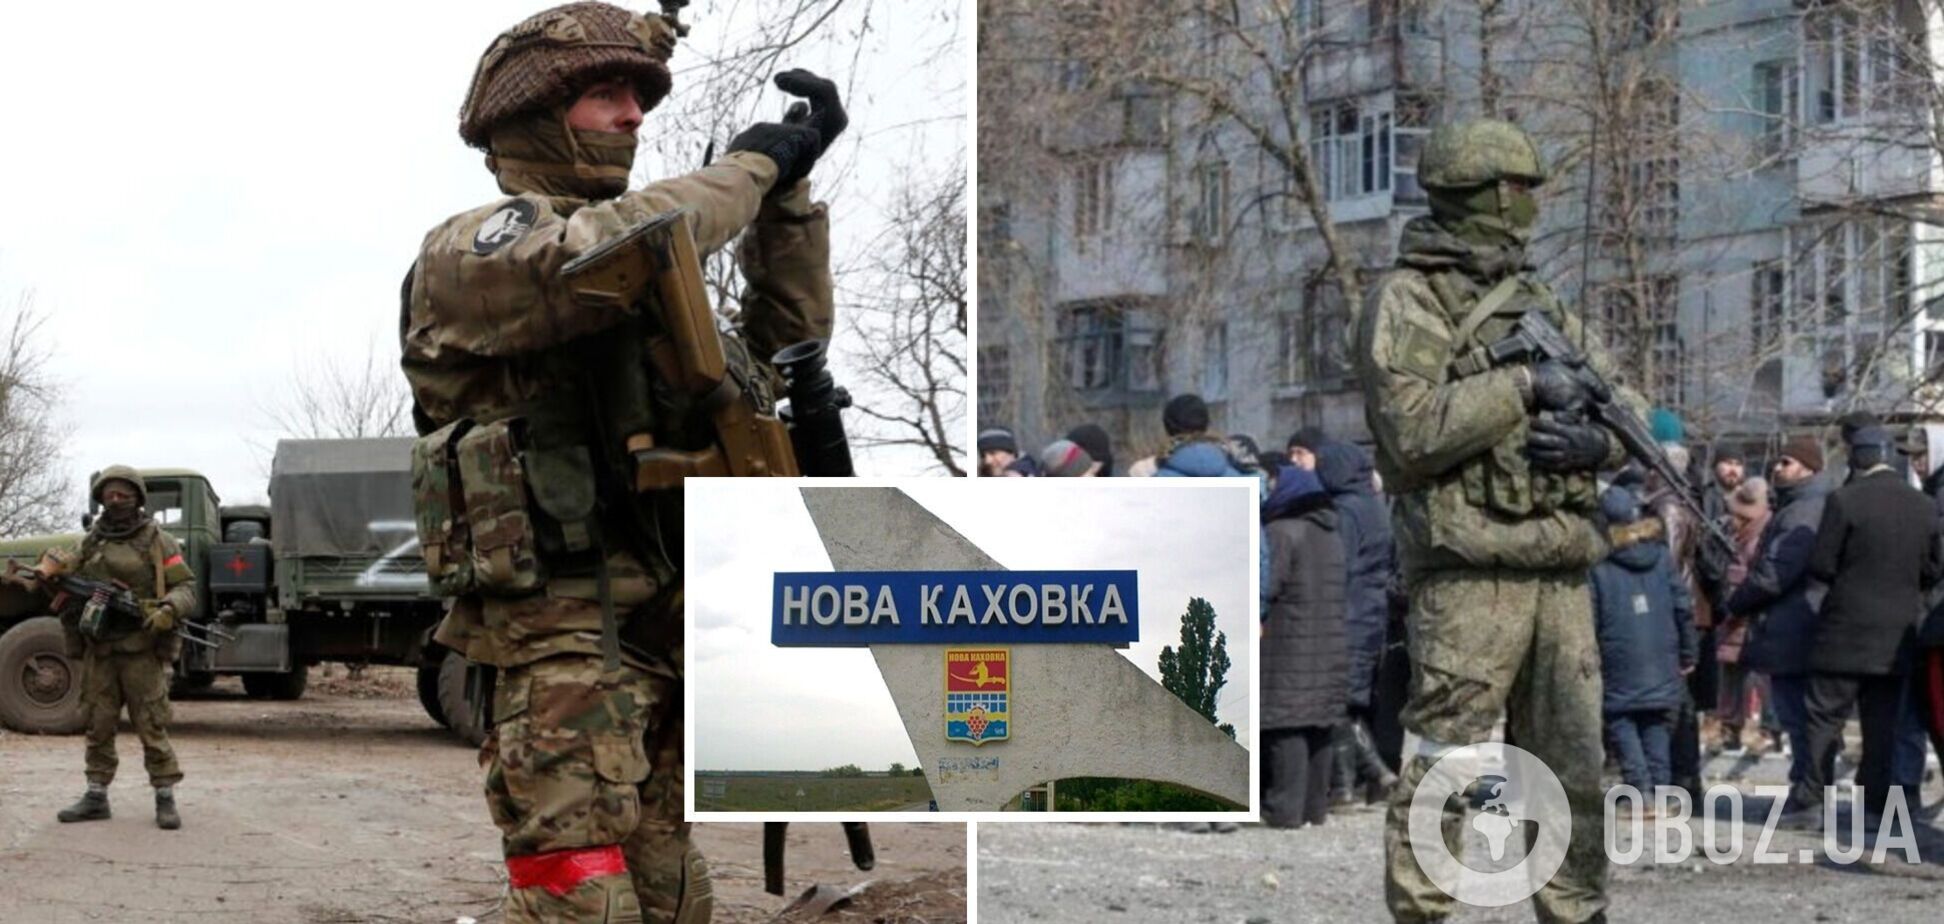 Оккупанты проводят принудительную 'эвакуацию' жителей Новой Каховки под предлогом подготовки к обороне города